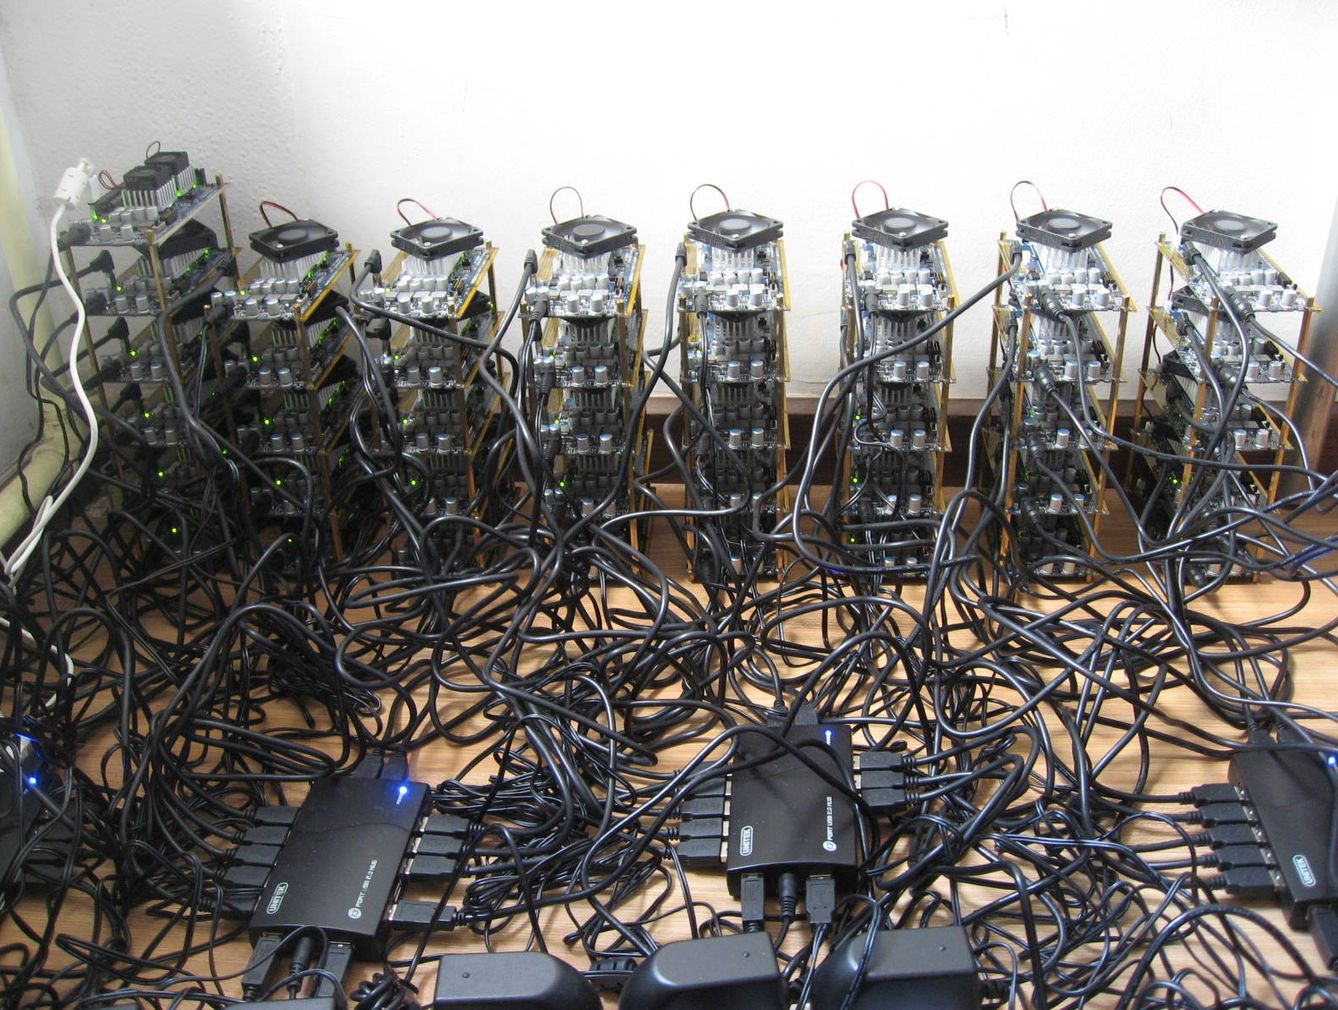  Equipos de usuario minando Bitcoin (Fuente: Xiangfu/Wikimedia)